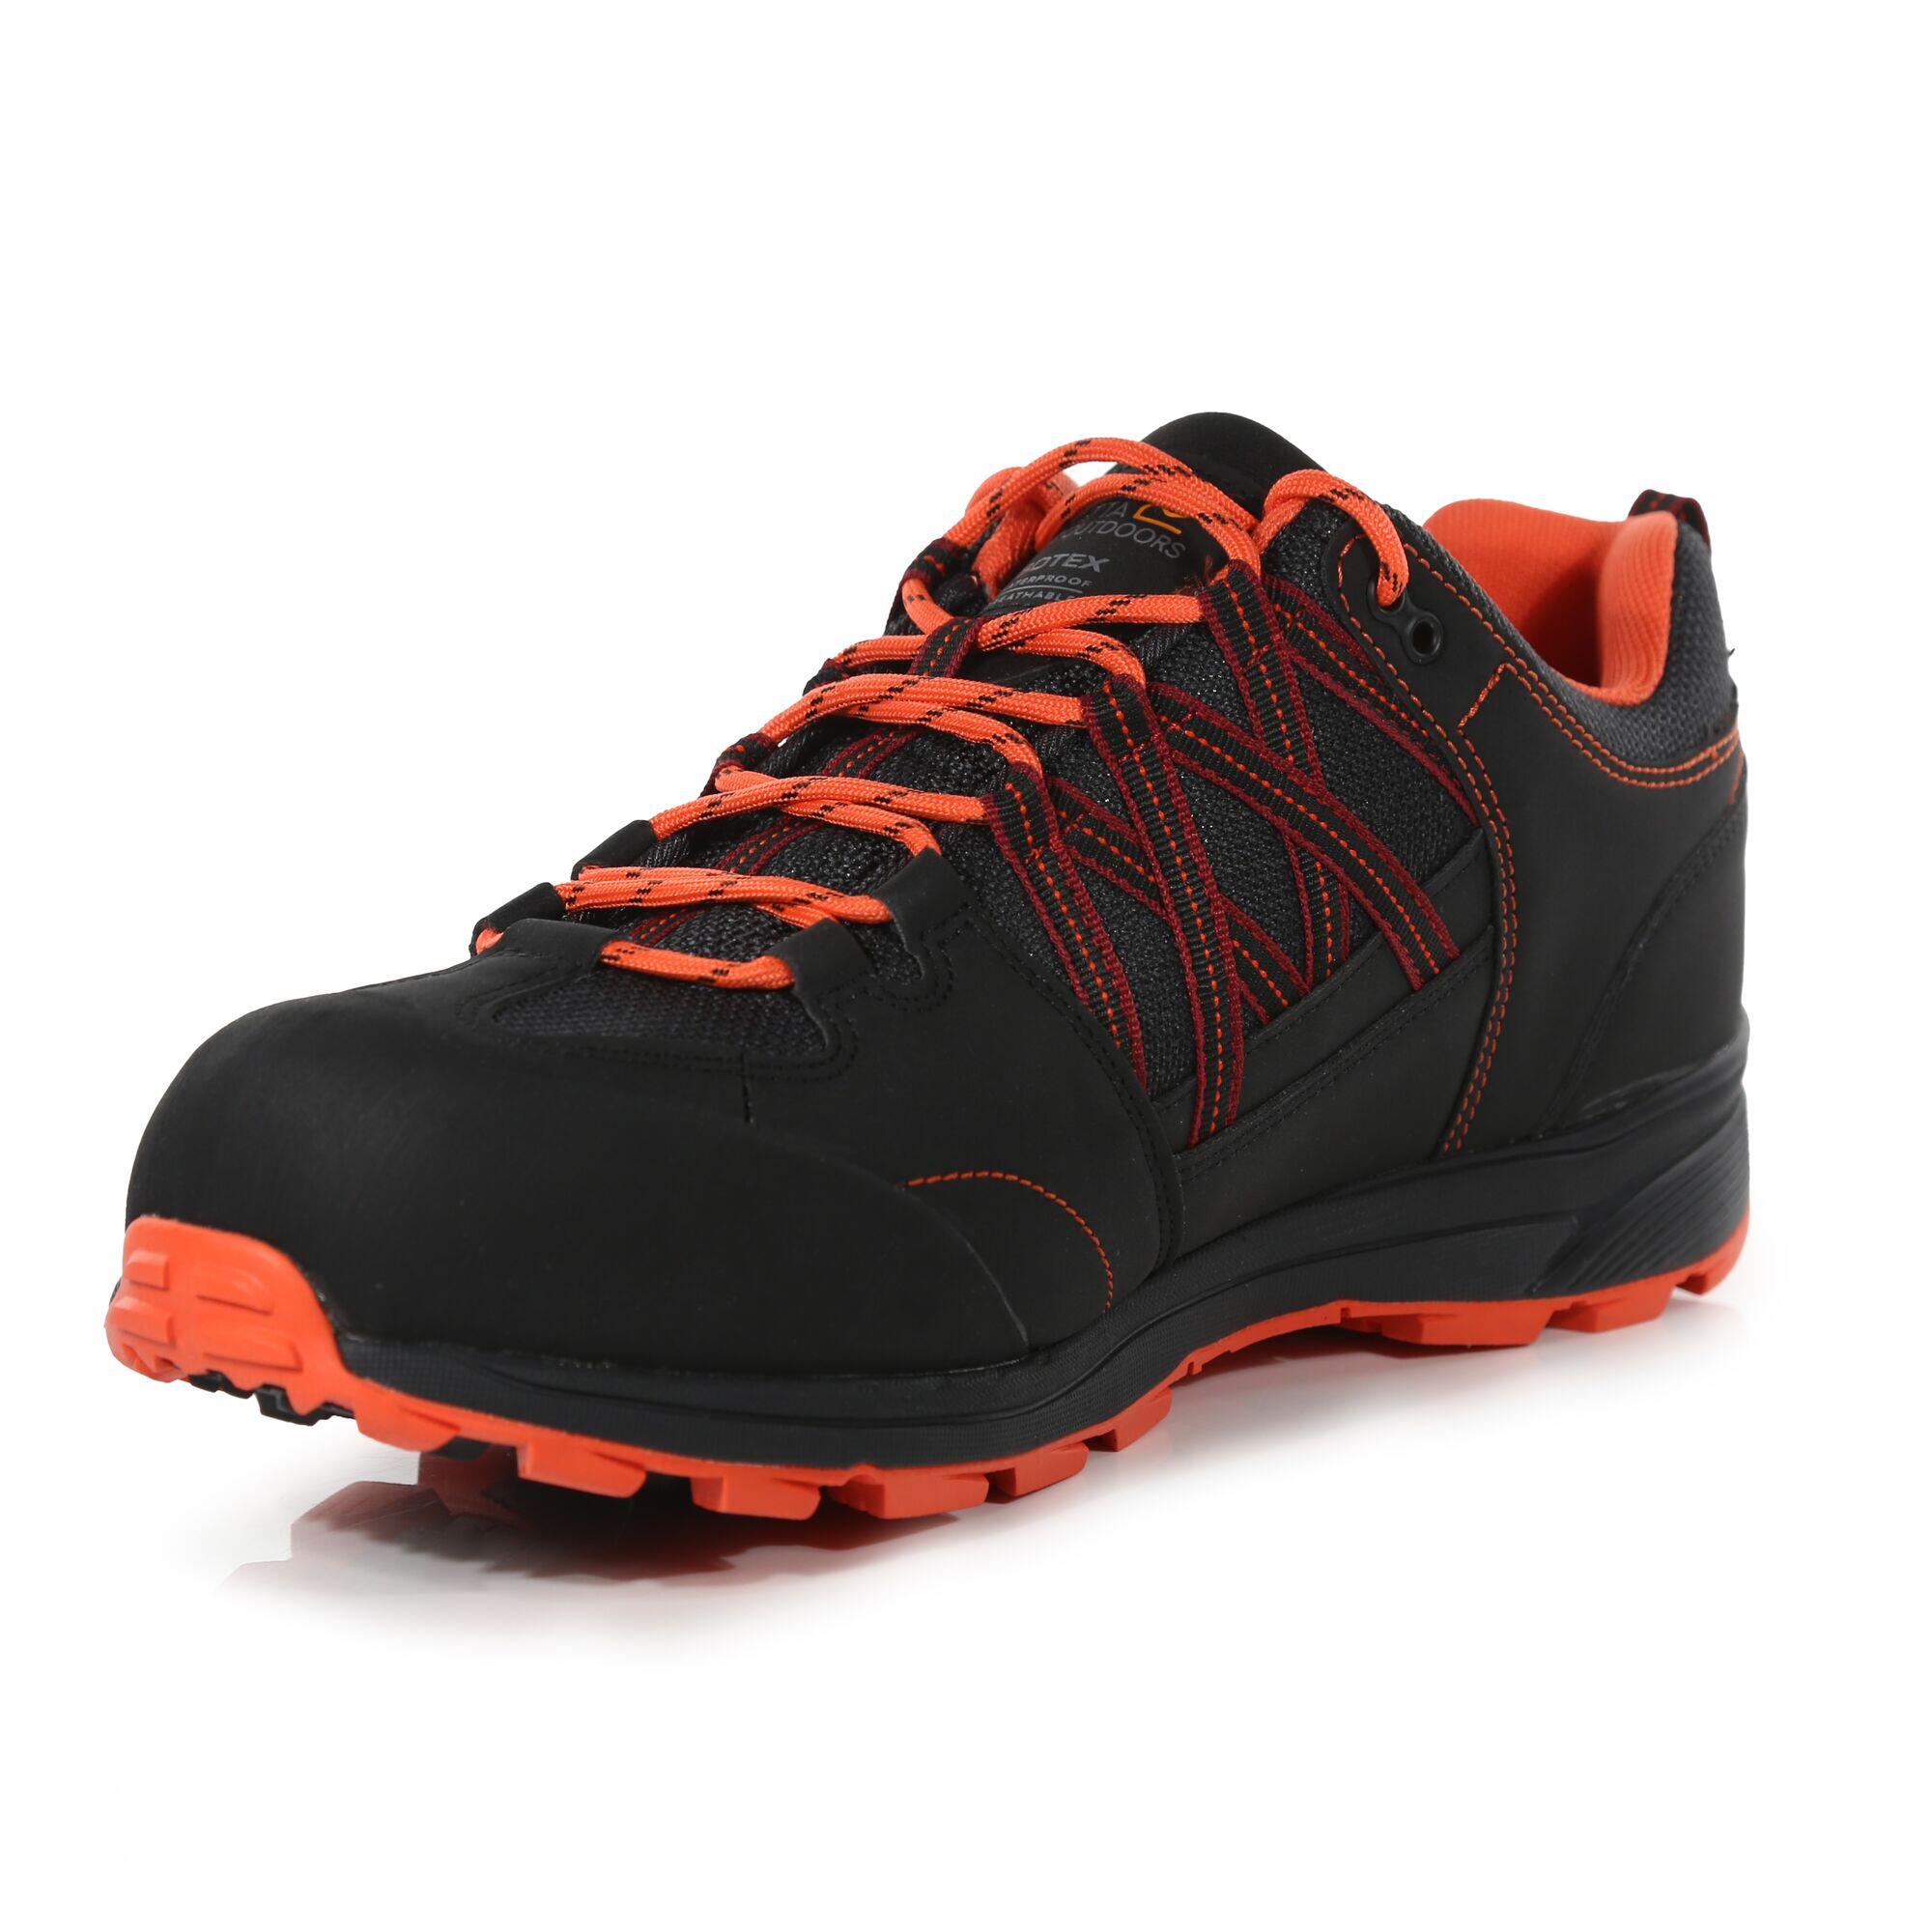 Samaris II Men's Hiking Shoes - Black/Red 3/6